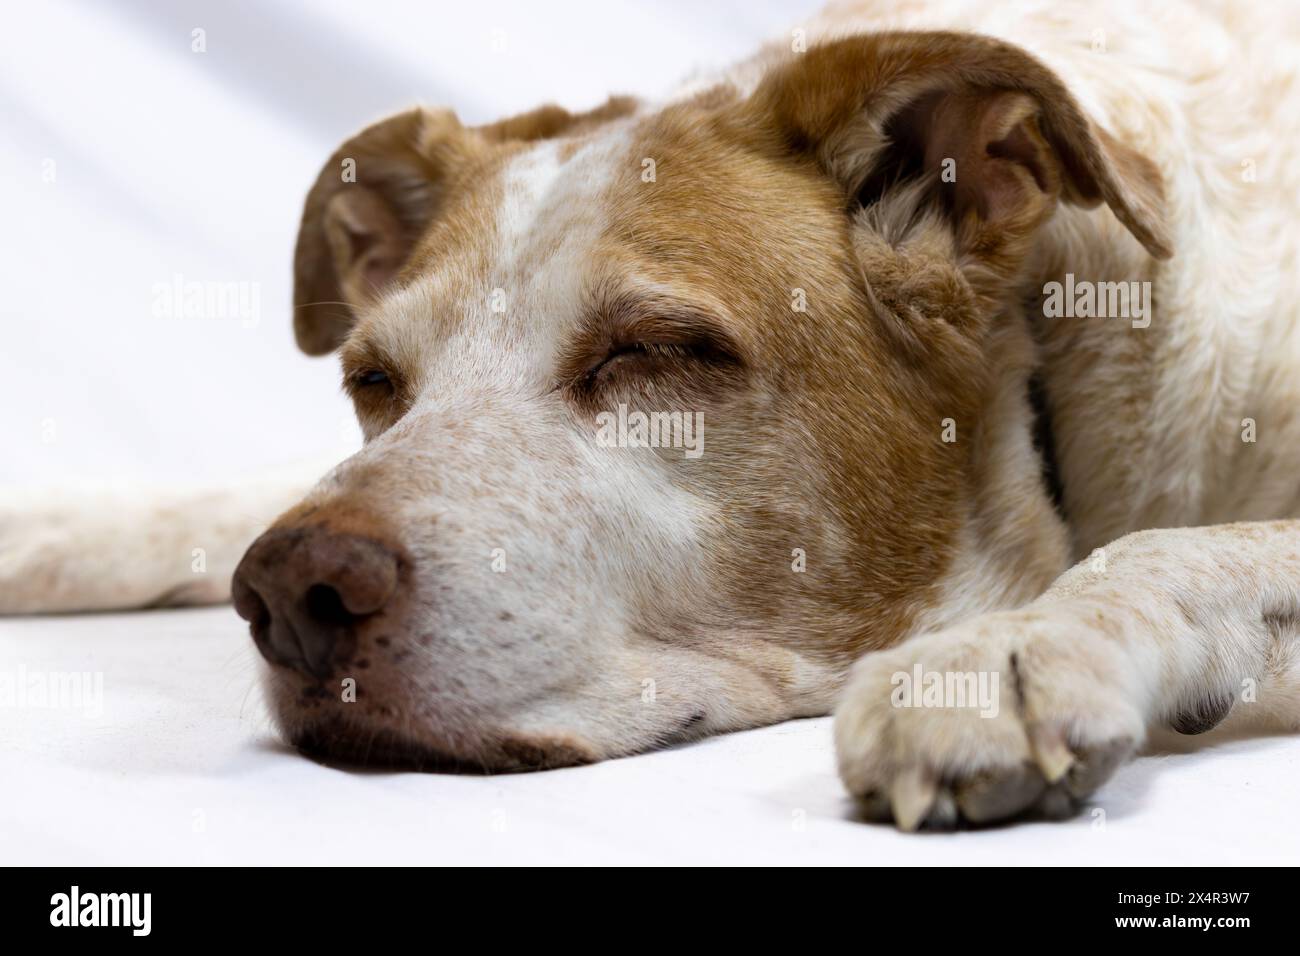 Dieses Bild zeigt einen ruhigen Moment eines älteren Hundes, der friedlich schläft. Stockfoto